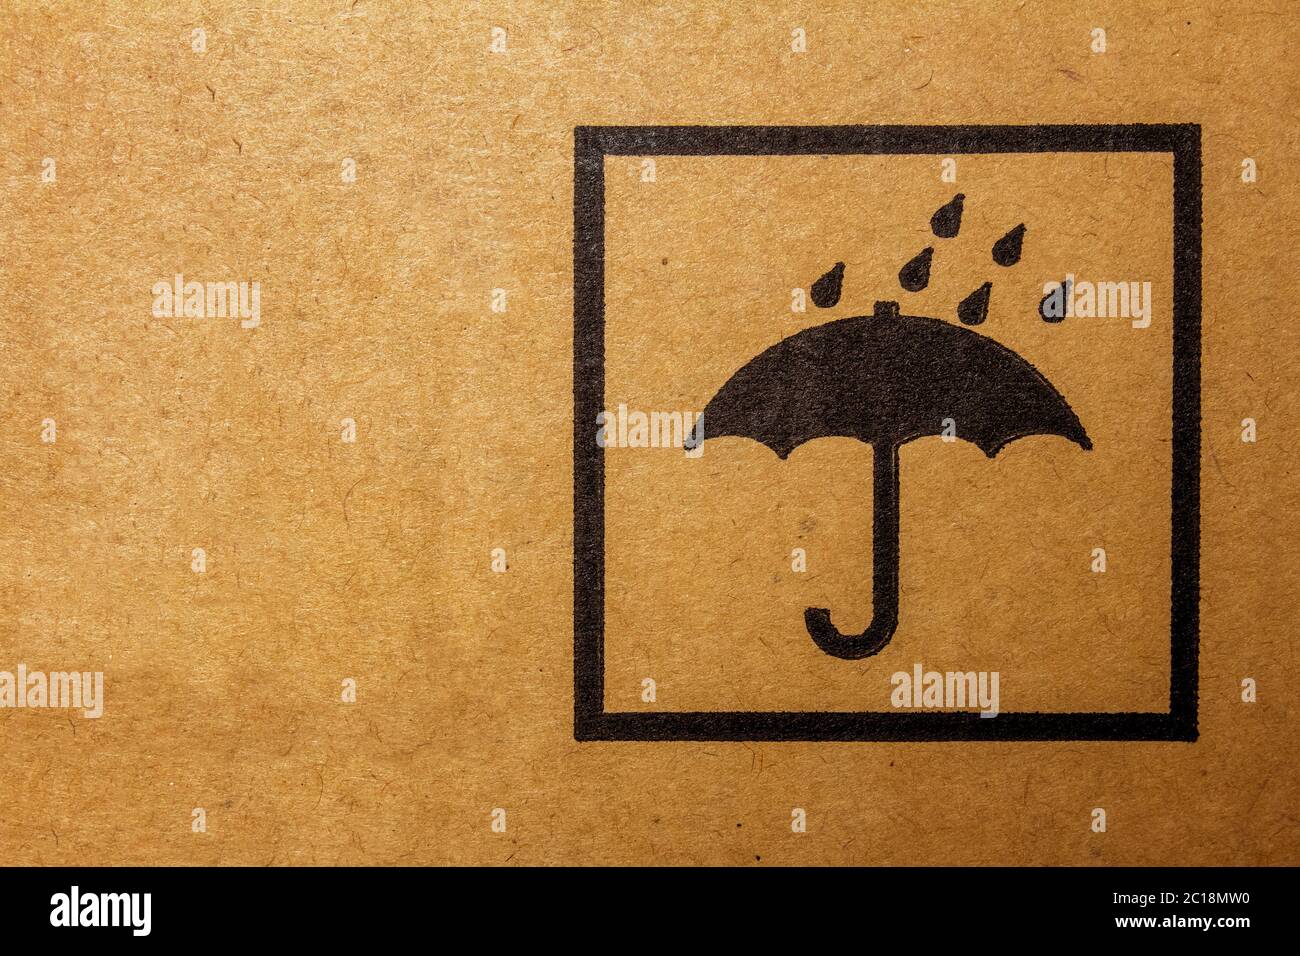 Verpackungszeichen in der Regel auf Frachtverpackungen gefunden. Es bedeutet, das Paket von Regen oder Feuchtigkeit fernzuhalten. Stockfoto